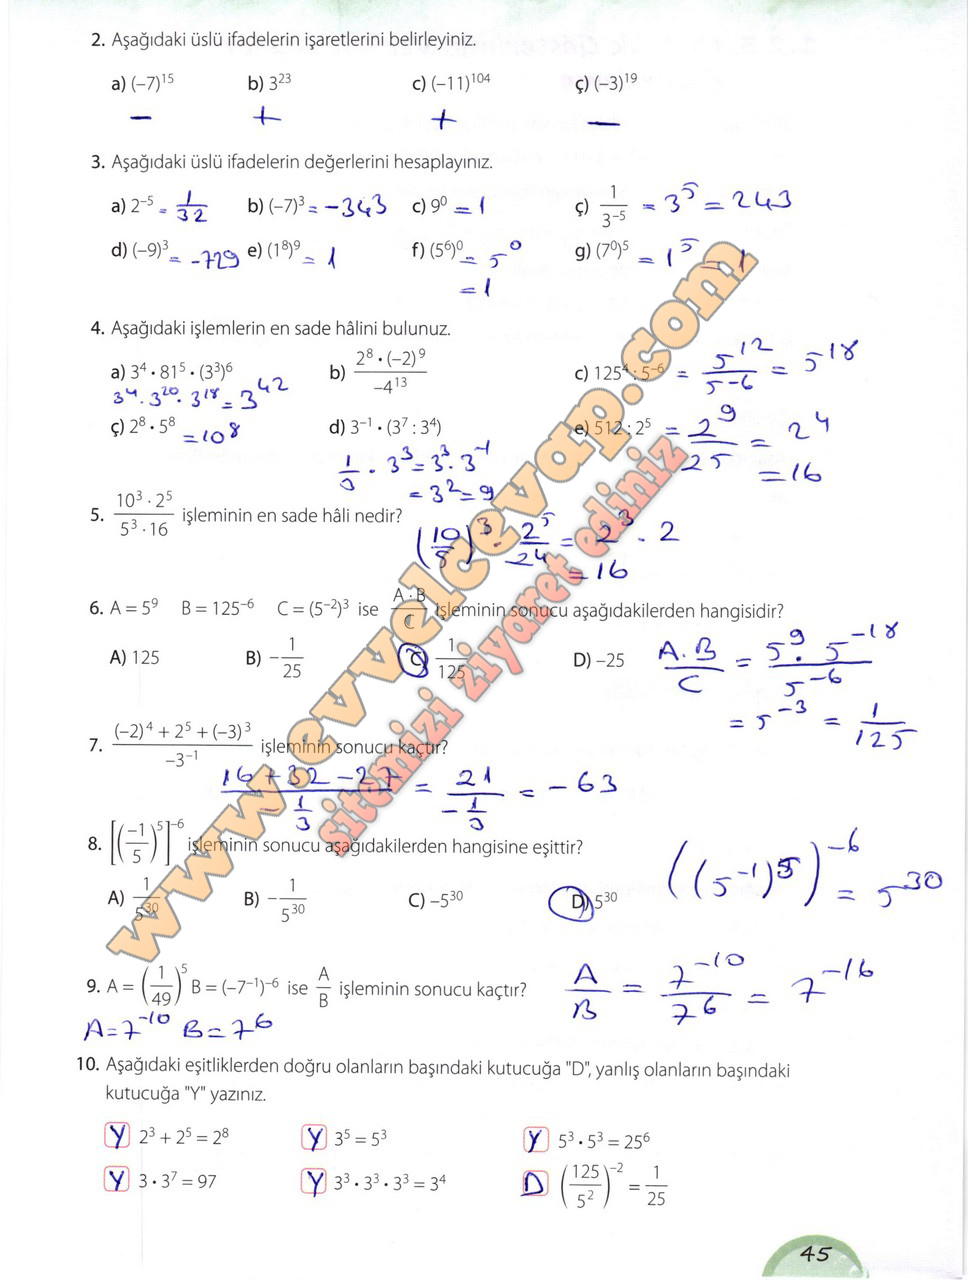 8. Sınıf Matematik Ders Kitabı Kök-e Sayfa 42-44-45-46-47-48 ...